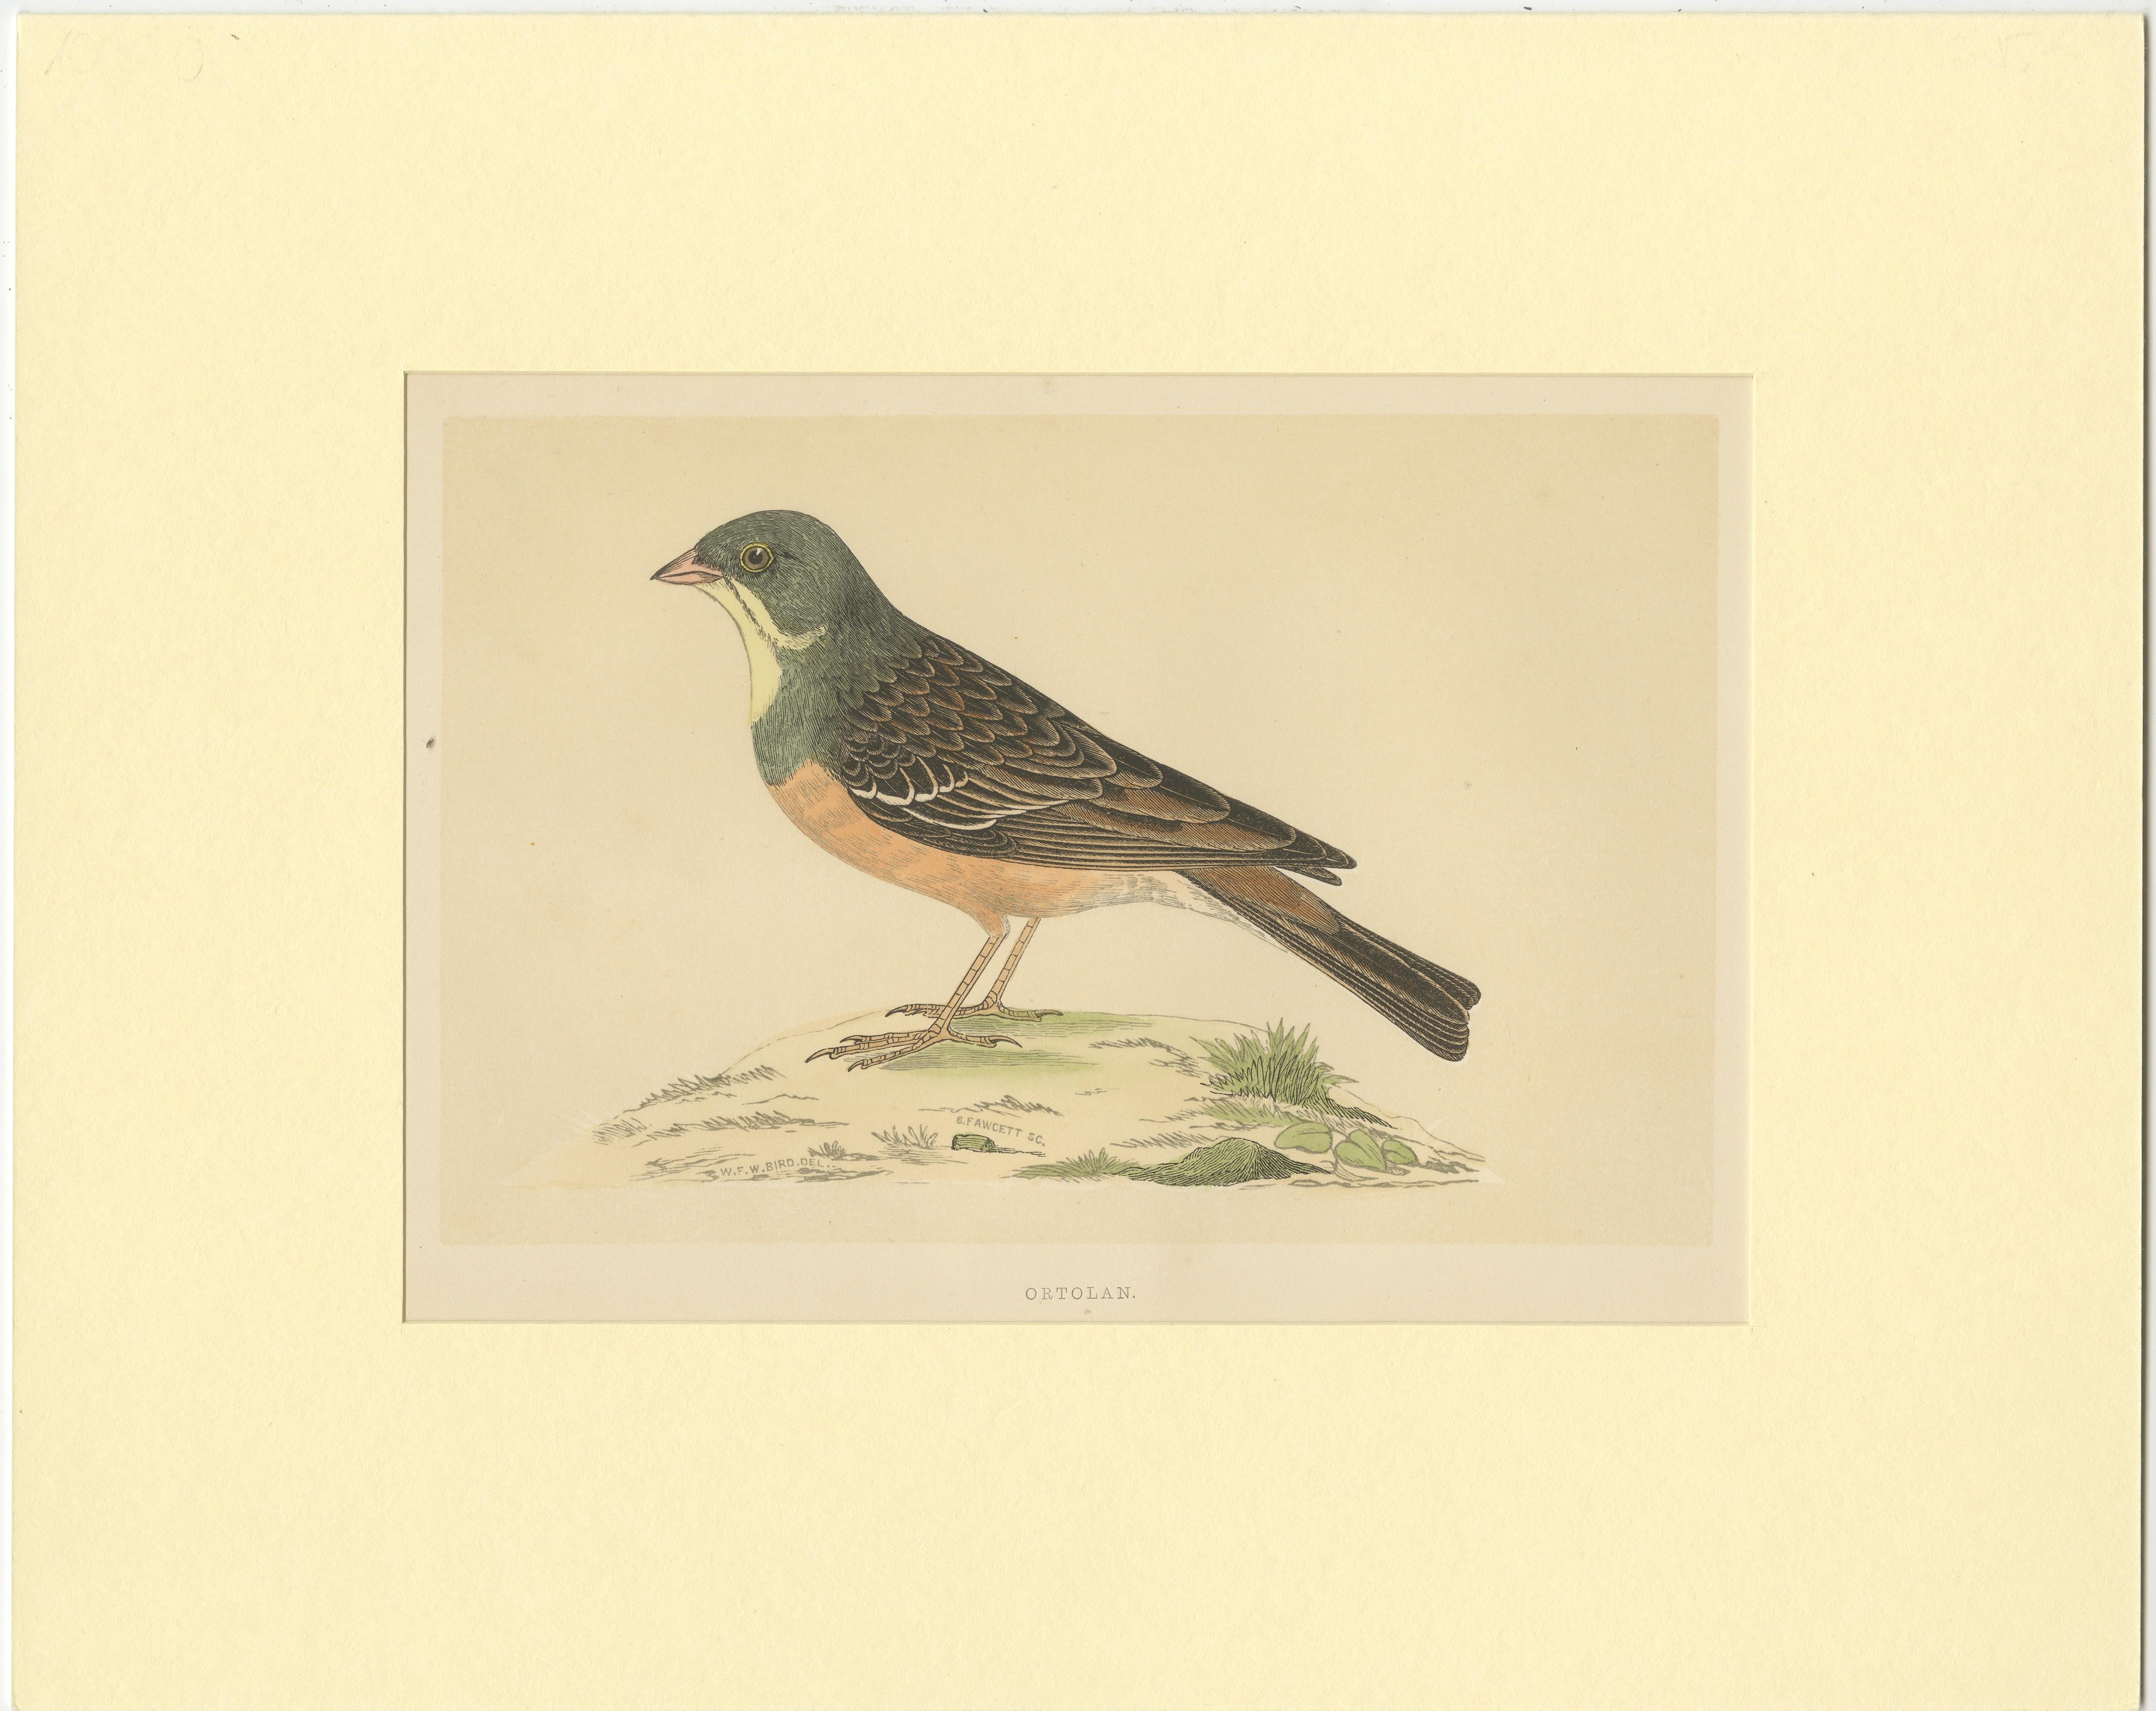 Original antique bird print of an ortolan. This print originates from 